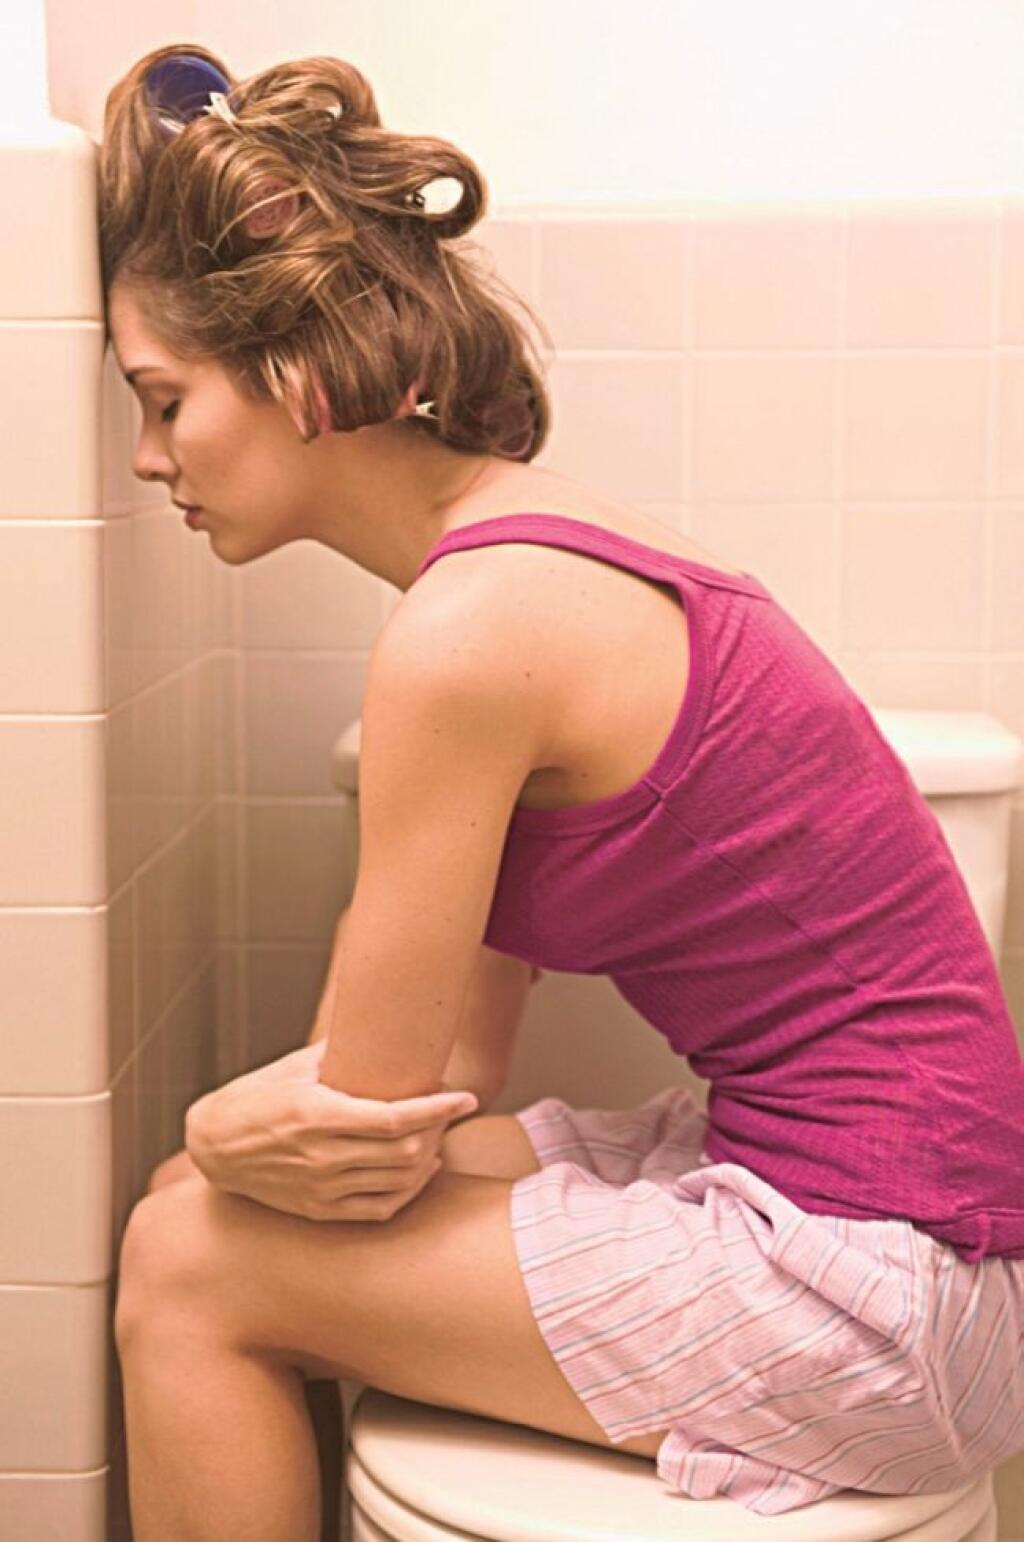 Проблема частого мочеиспускания. У девушки диарея. Женщина сидит в туалете.